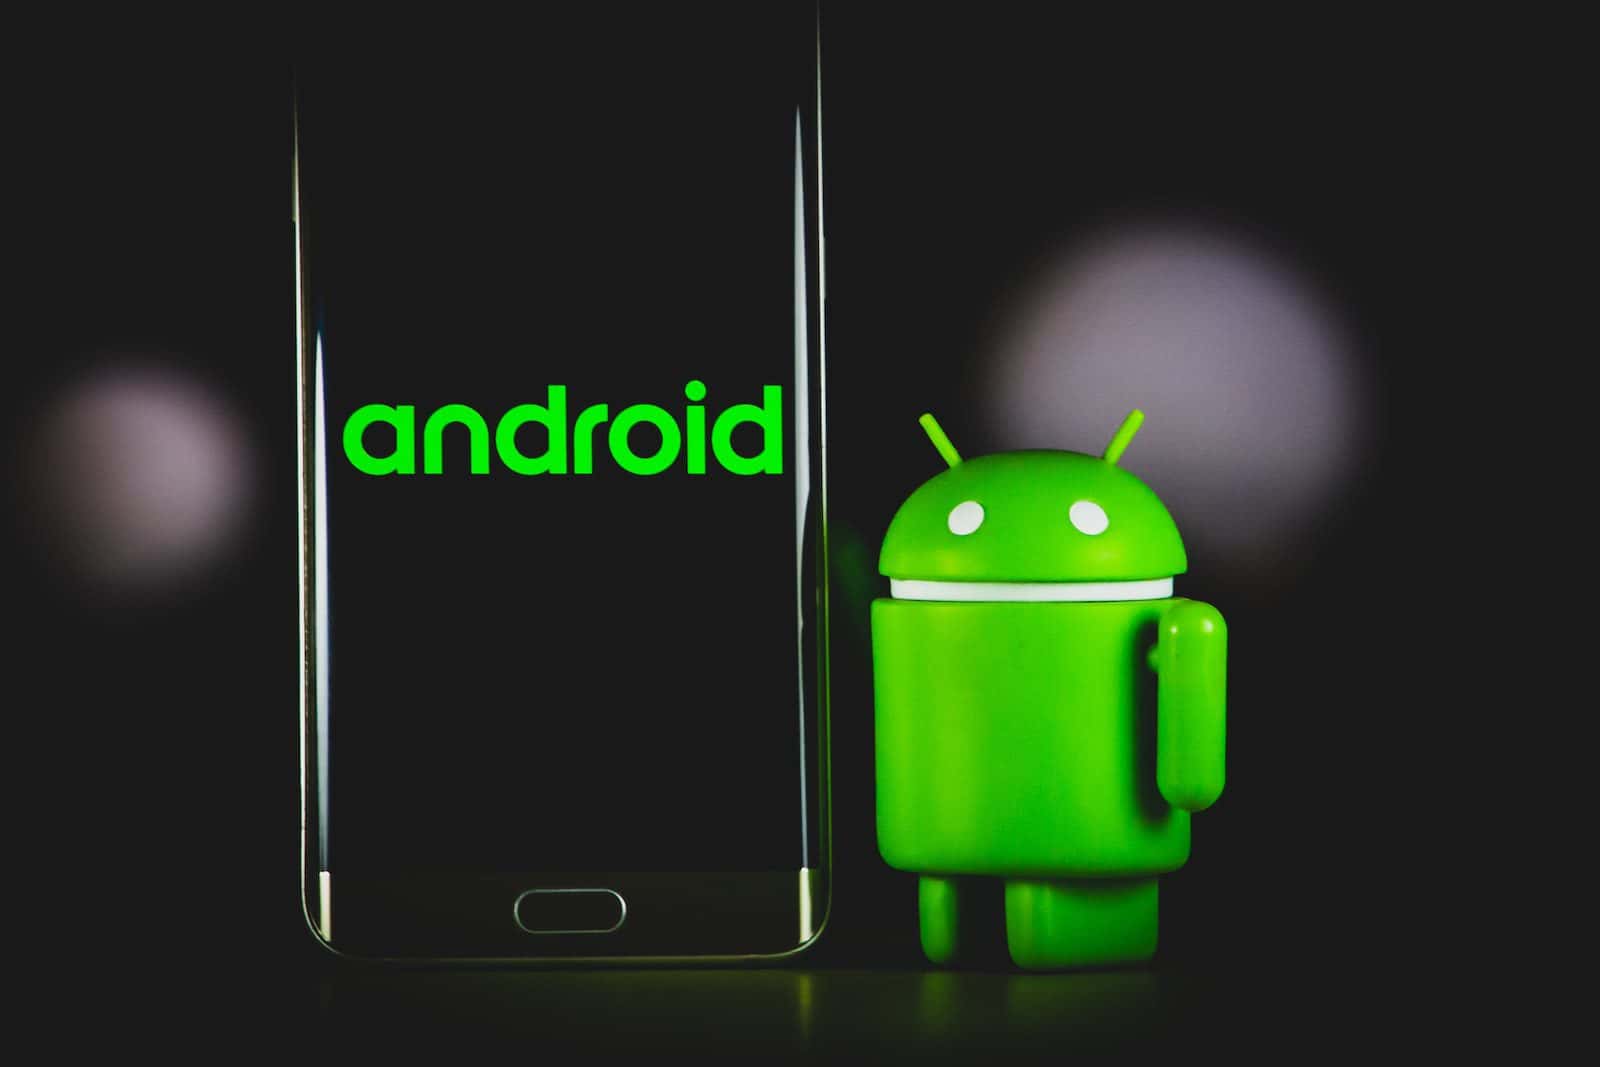 zelená žába pouzdro na iphone vedle černého smartphonu samsung android